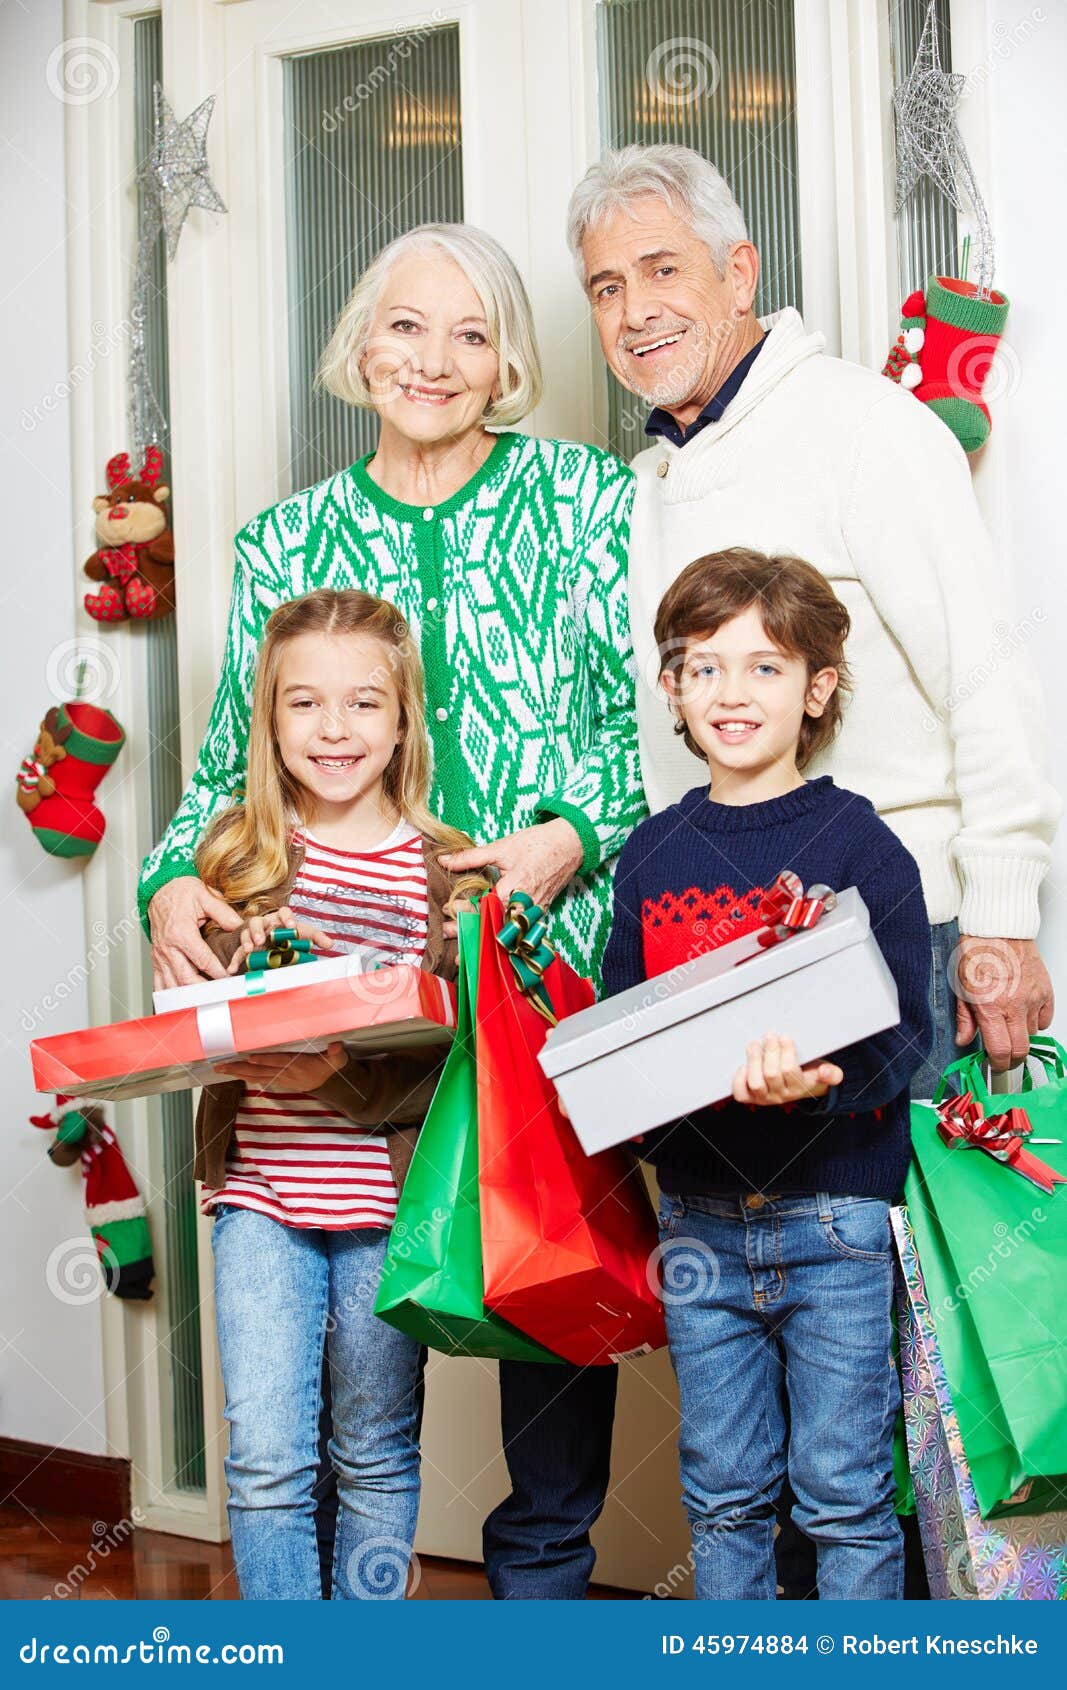 Regali Di Natale Nonni.Nonni Con I Nipoti Ed I Regali A Natale Fotografia Stock Immagine Di Generazioni Vivere 45974884